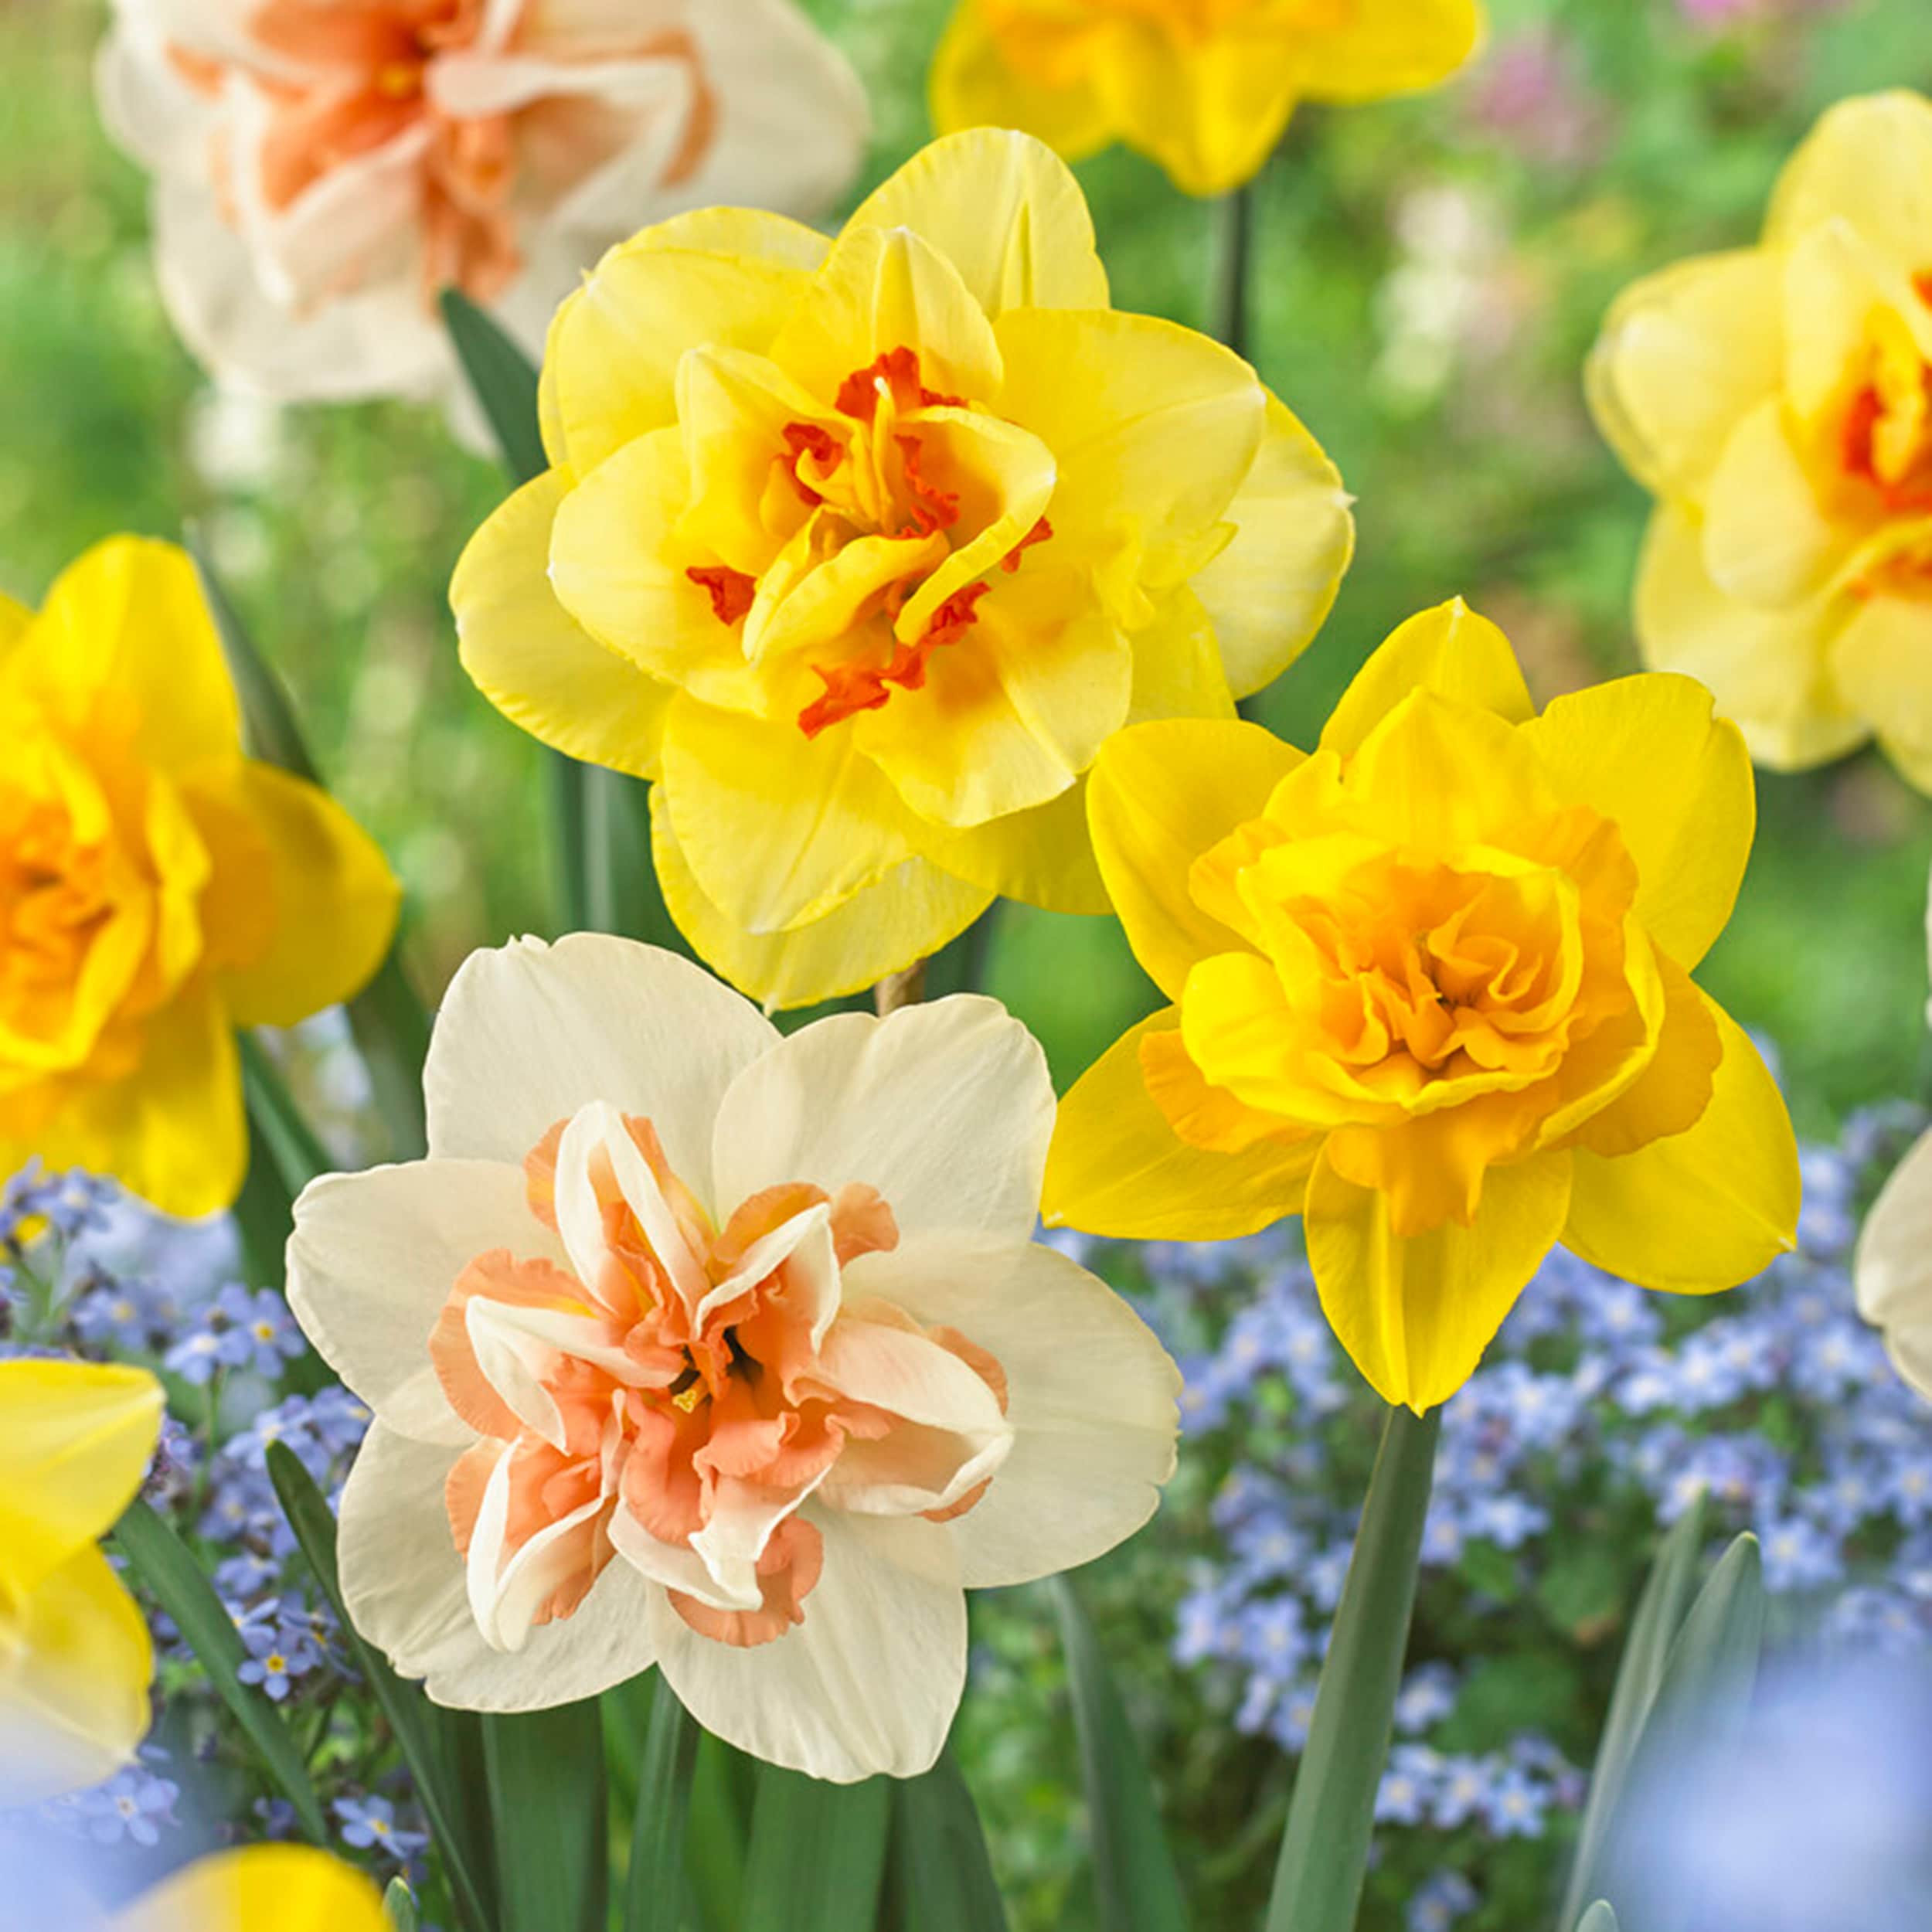 Daffodil, Spring flower, Narcissus, Bulb